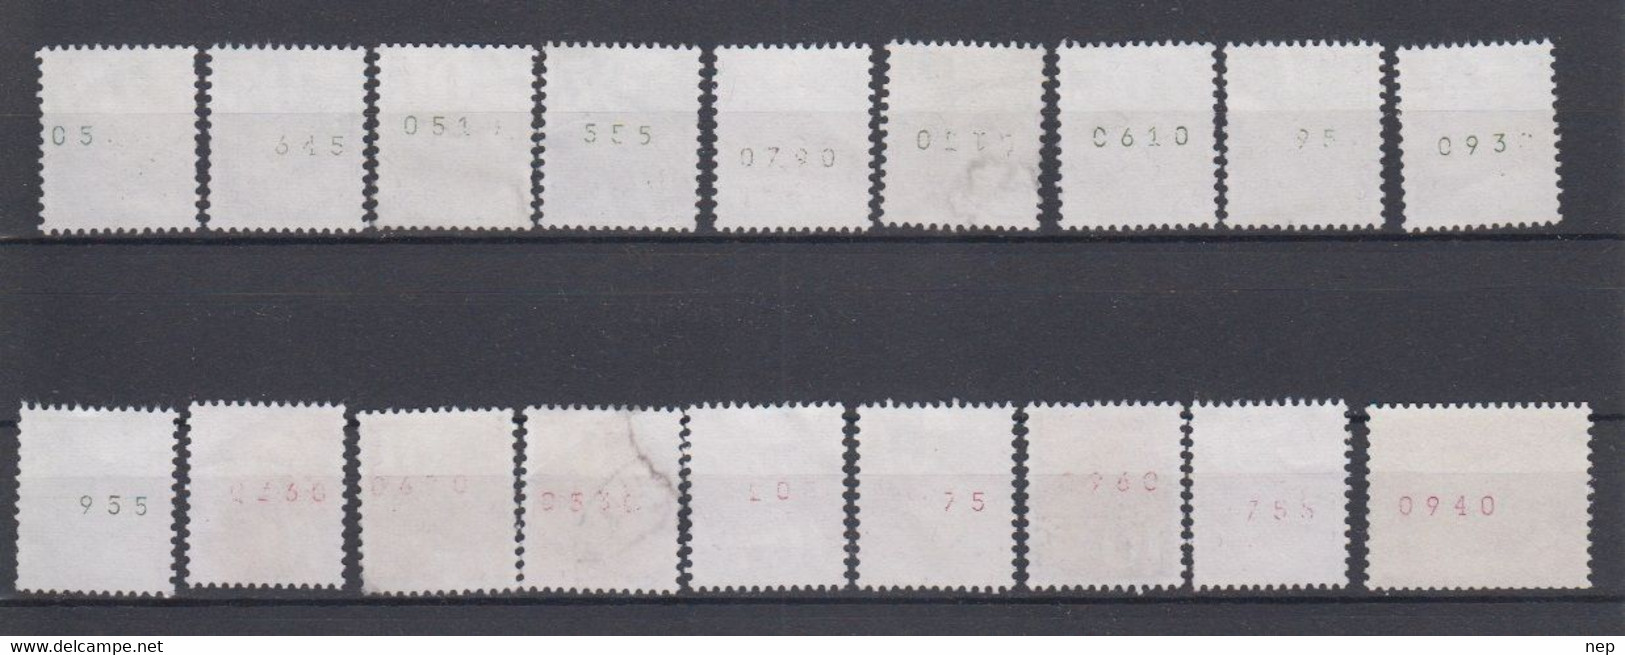 ZWITSERLAND - Michel - 1960/70 - Nr 699 R + 933 (x10) + 934 (x7) - (Verschillende Rolnummers) - Gest/Obl/Us - Franqueo